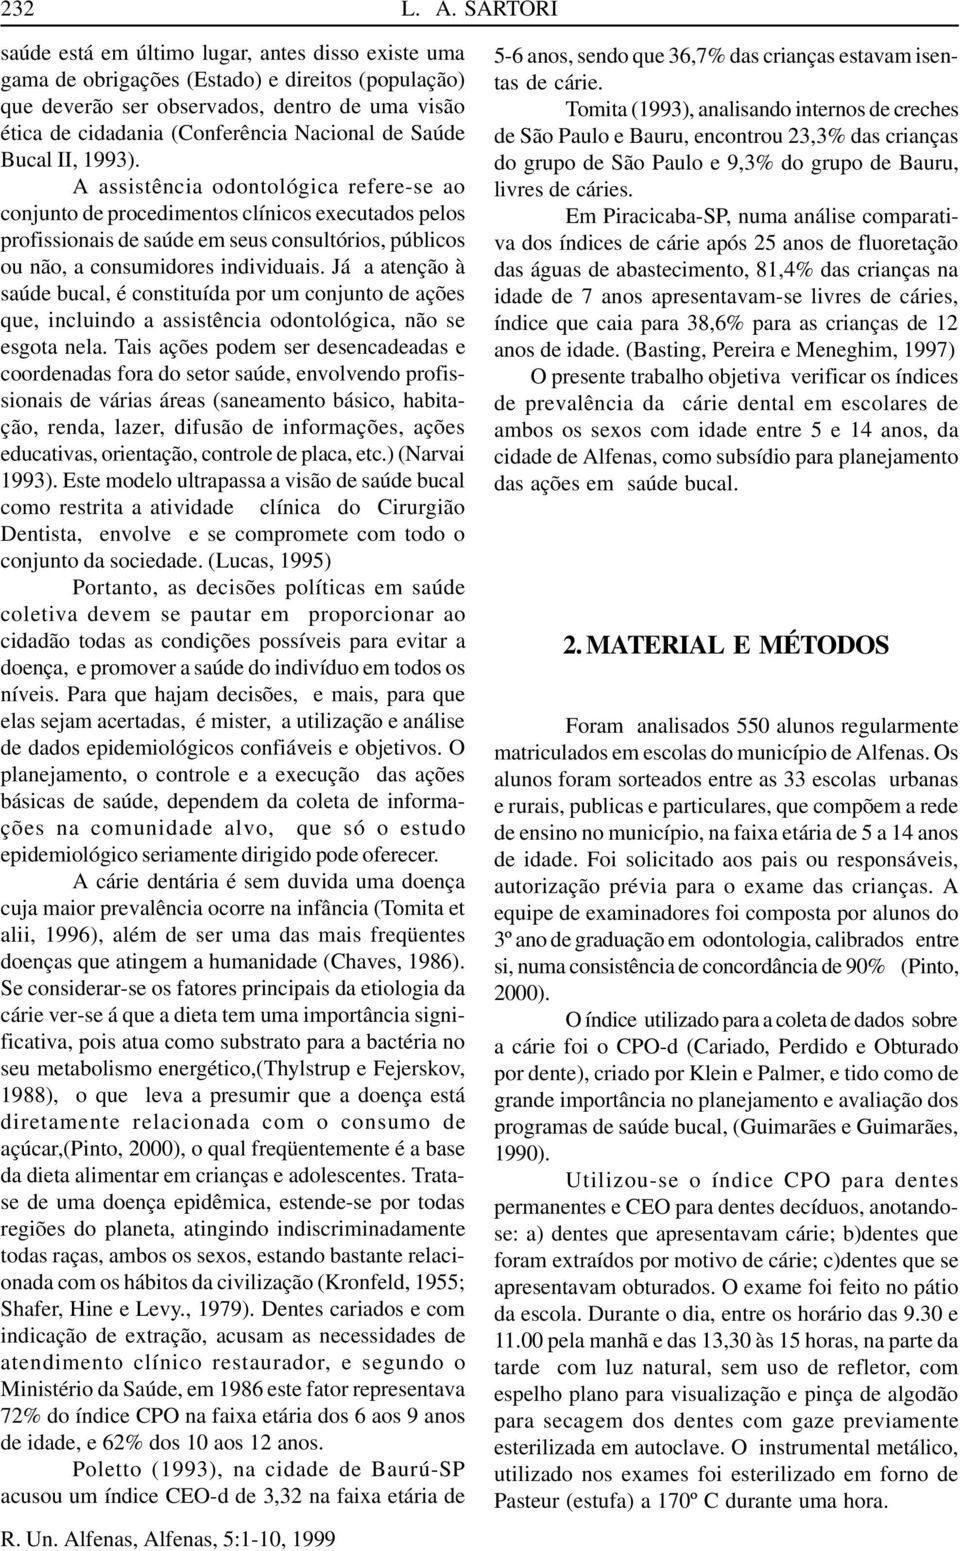 de Saúde Bucal II, 1993).